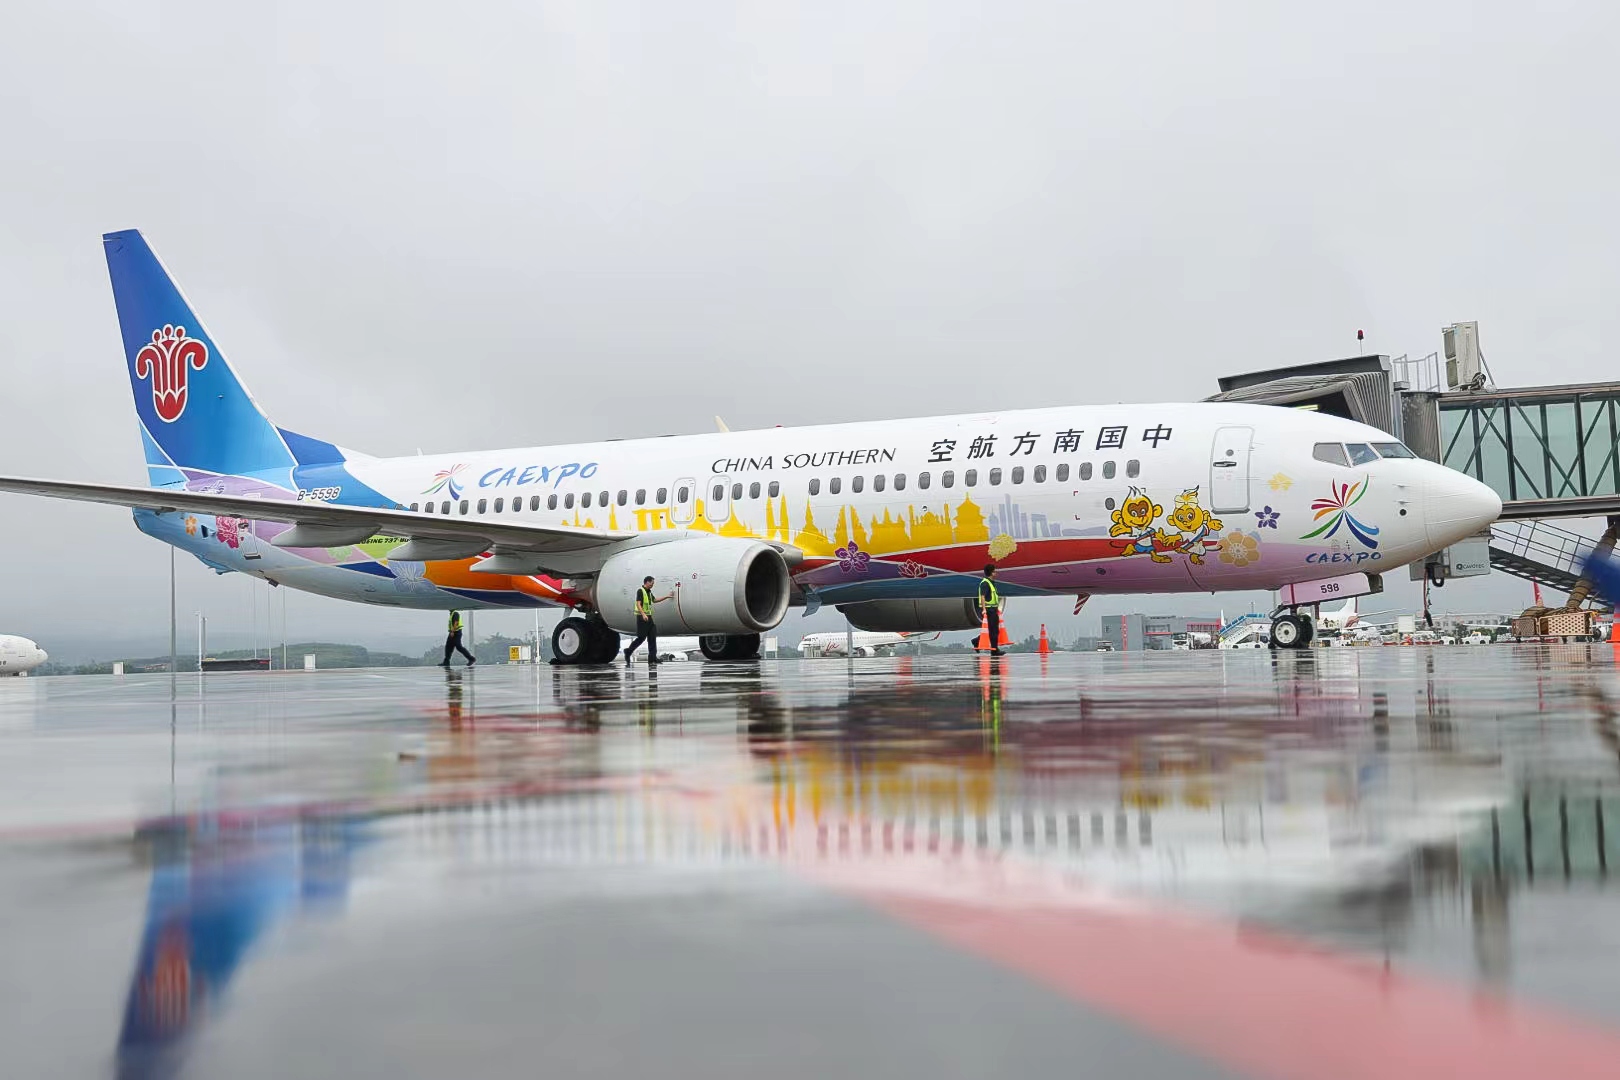 2、南航“中國—東盟博覽會號”彩繪飛機.jpg